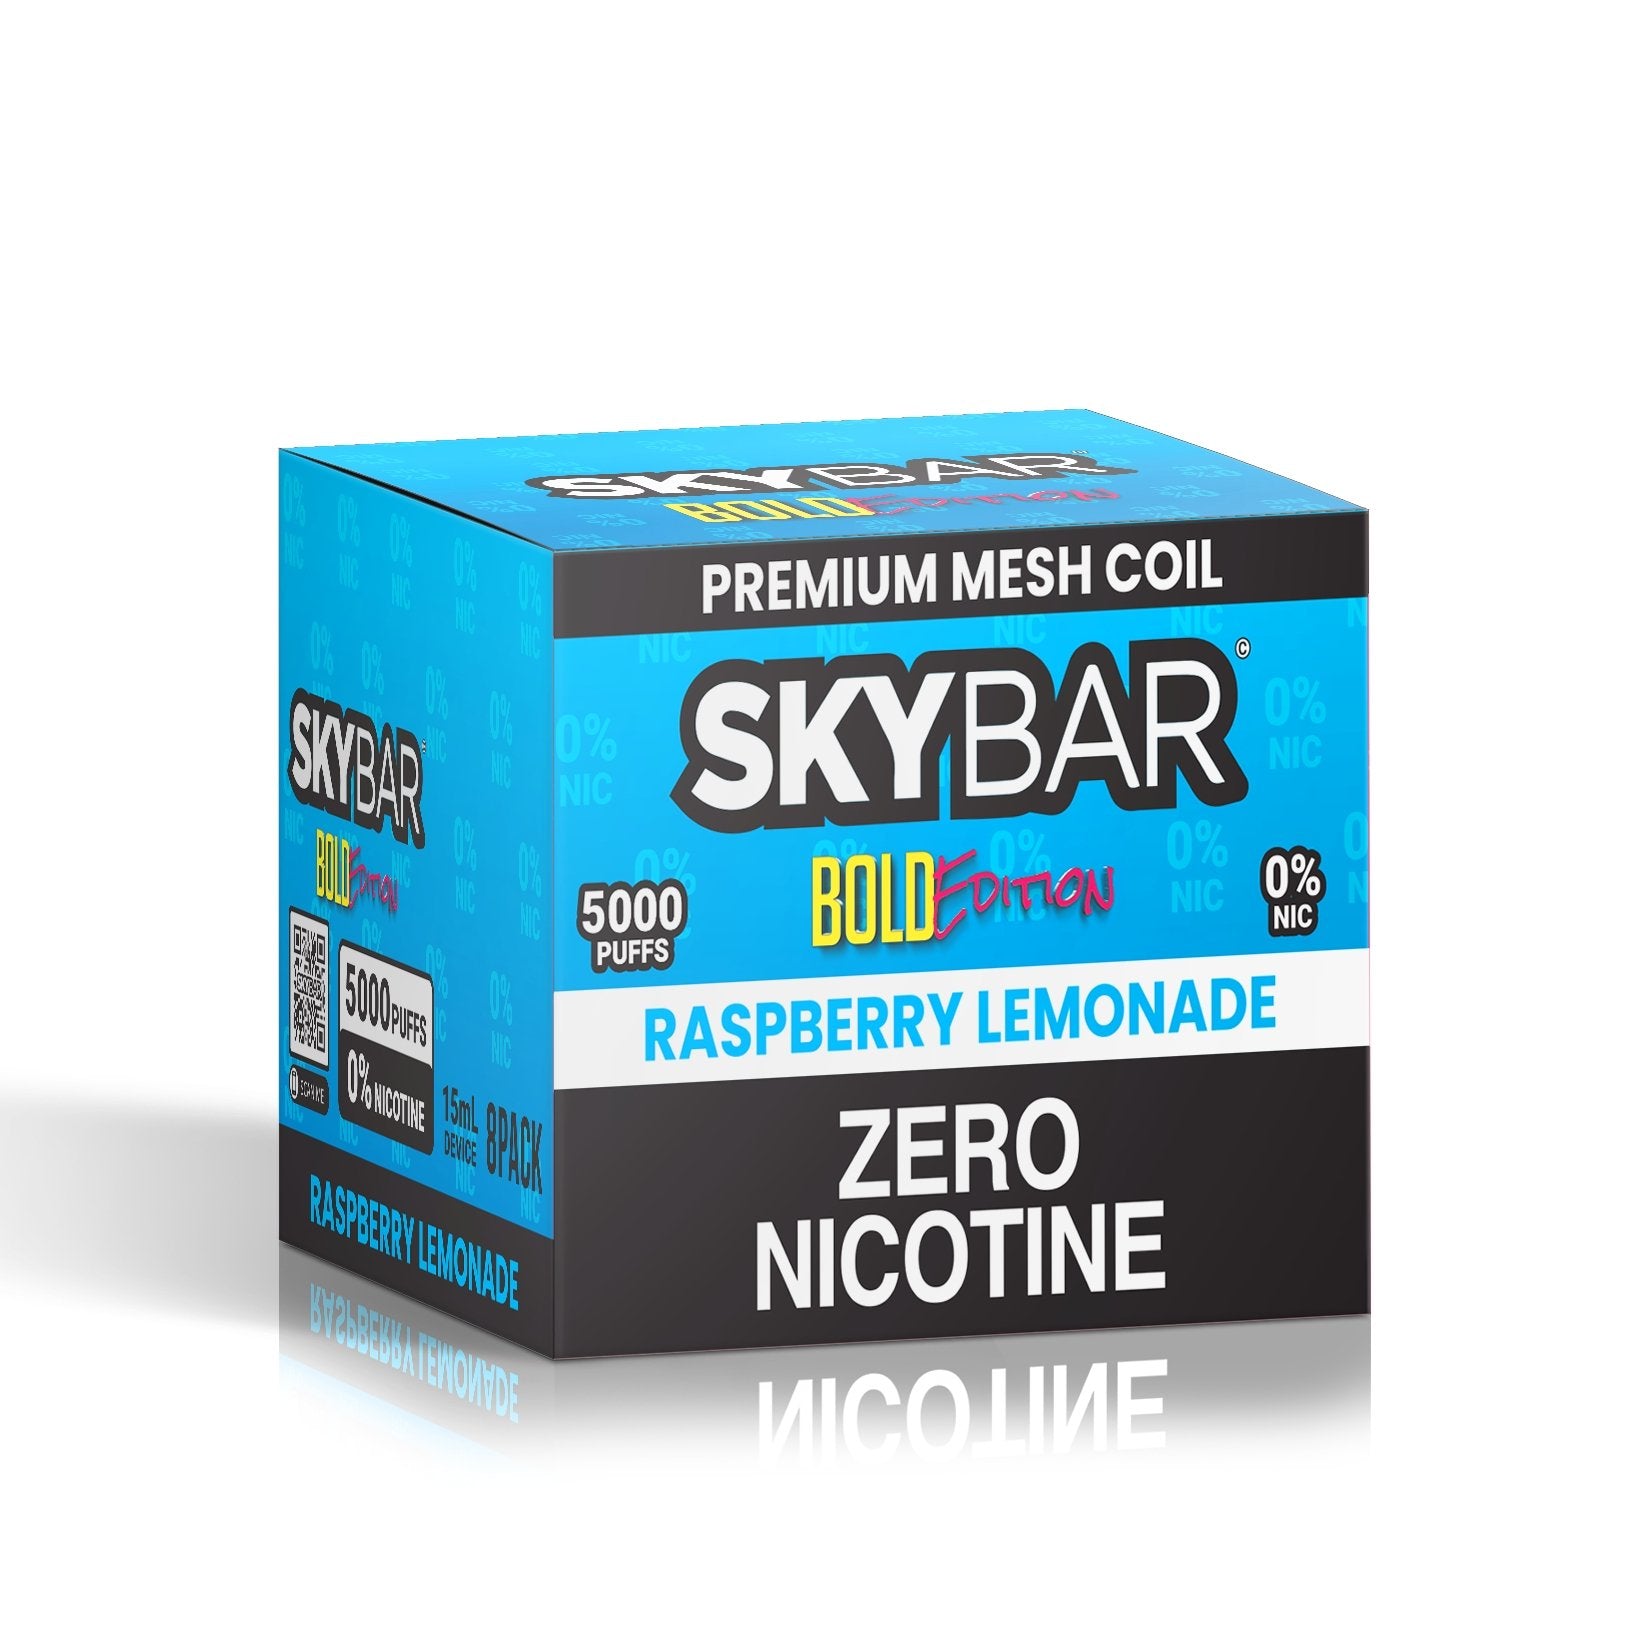 SKYBAR BOLD 5000 PUFFS 5% Nic BOX 8ct - Skybar